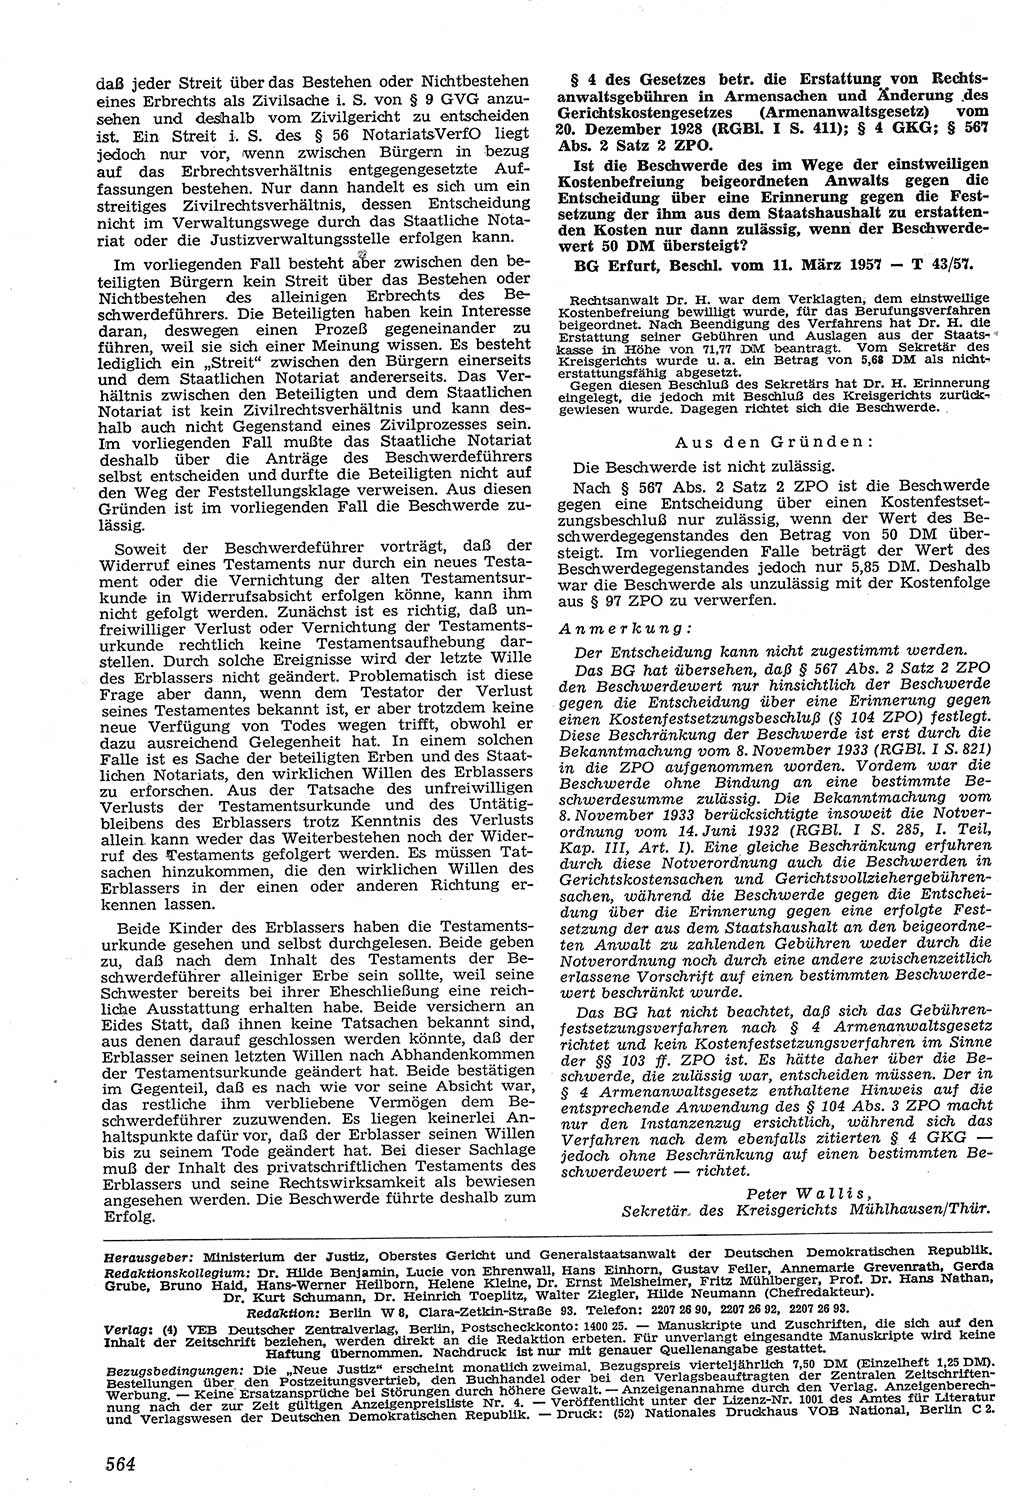 Neue Justiz (NJ), Zeitschrift für Recht und Rechtswissenschaft [Deutsche Demokratische Republik (DDR)], 11. Jahrgang 1957, Seite 564 (NJ DDR 1957, S. 564)